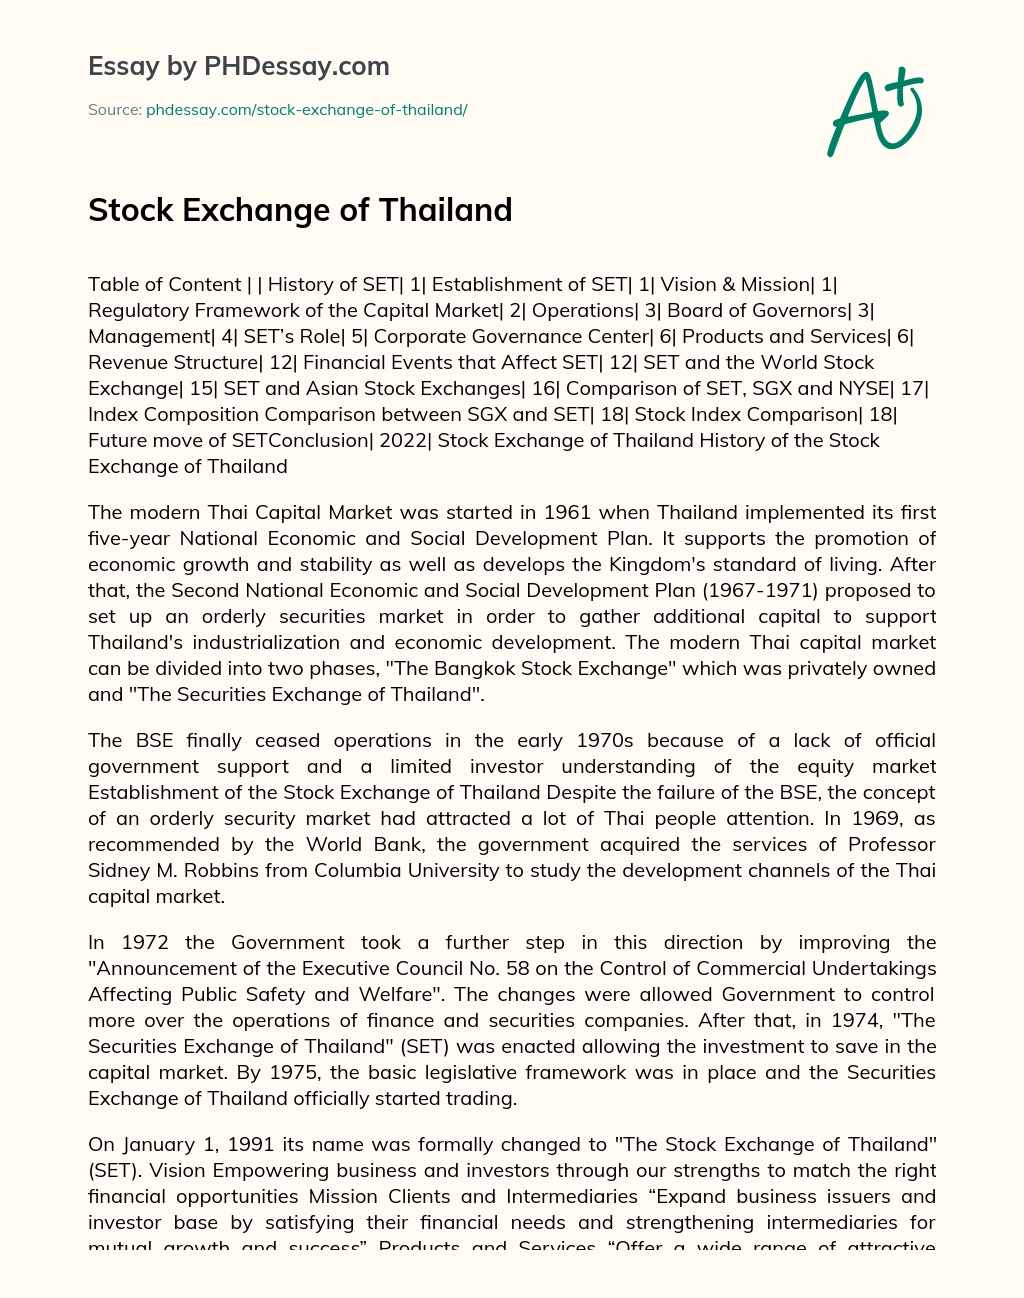 Stock Exchange of Thailand essay